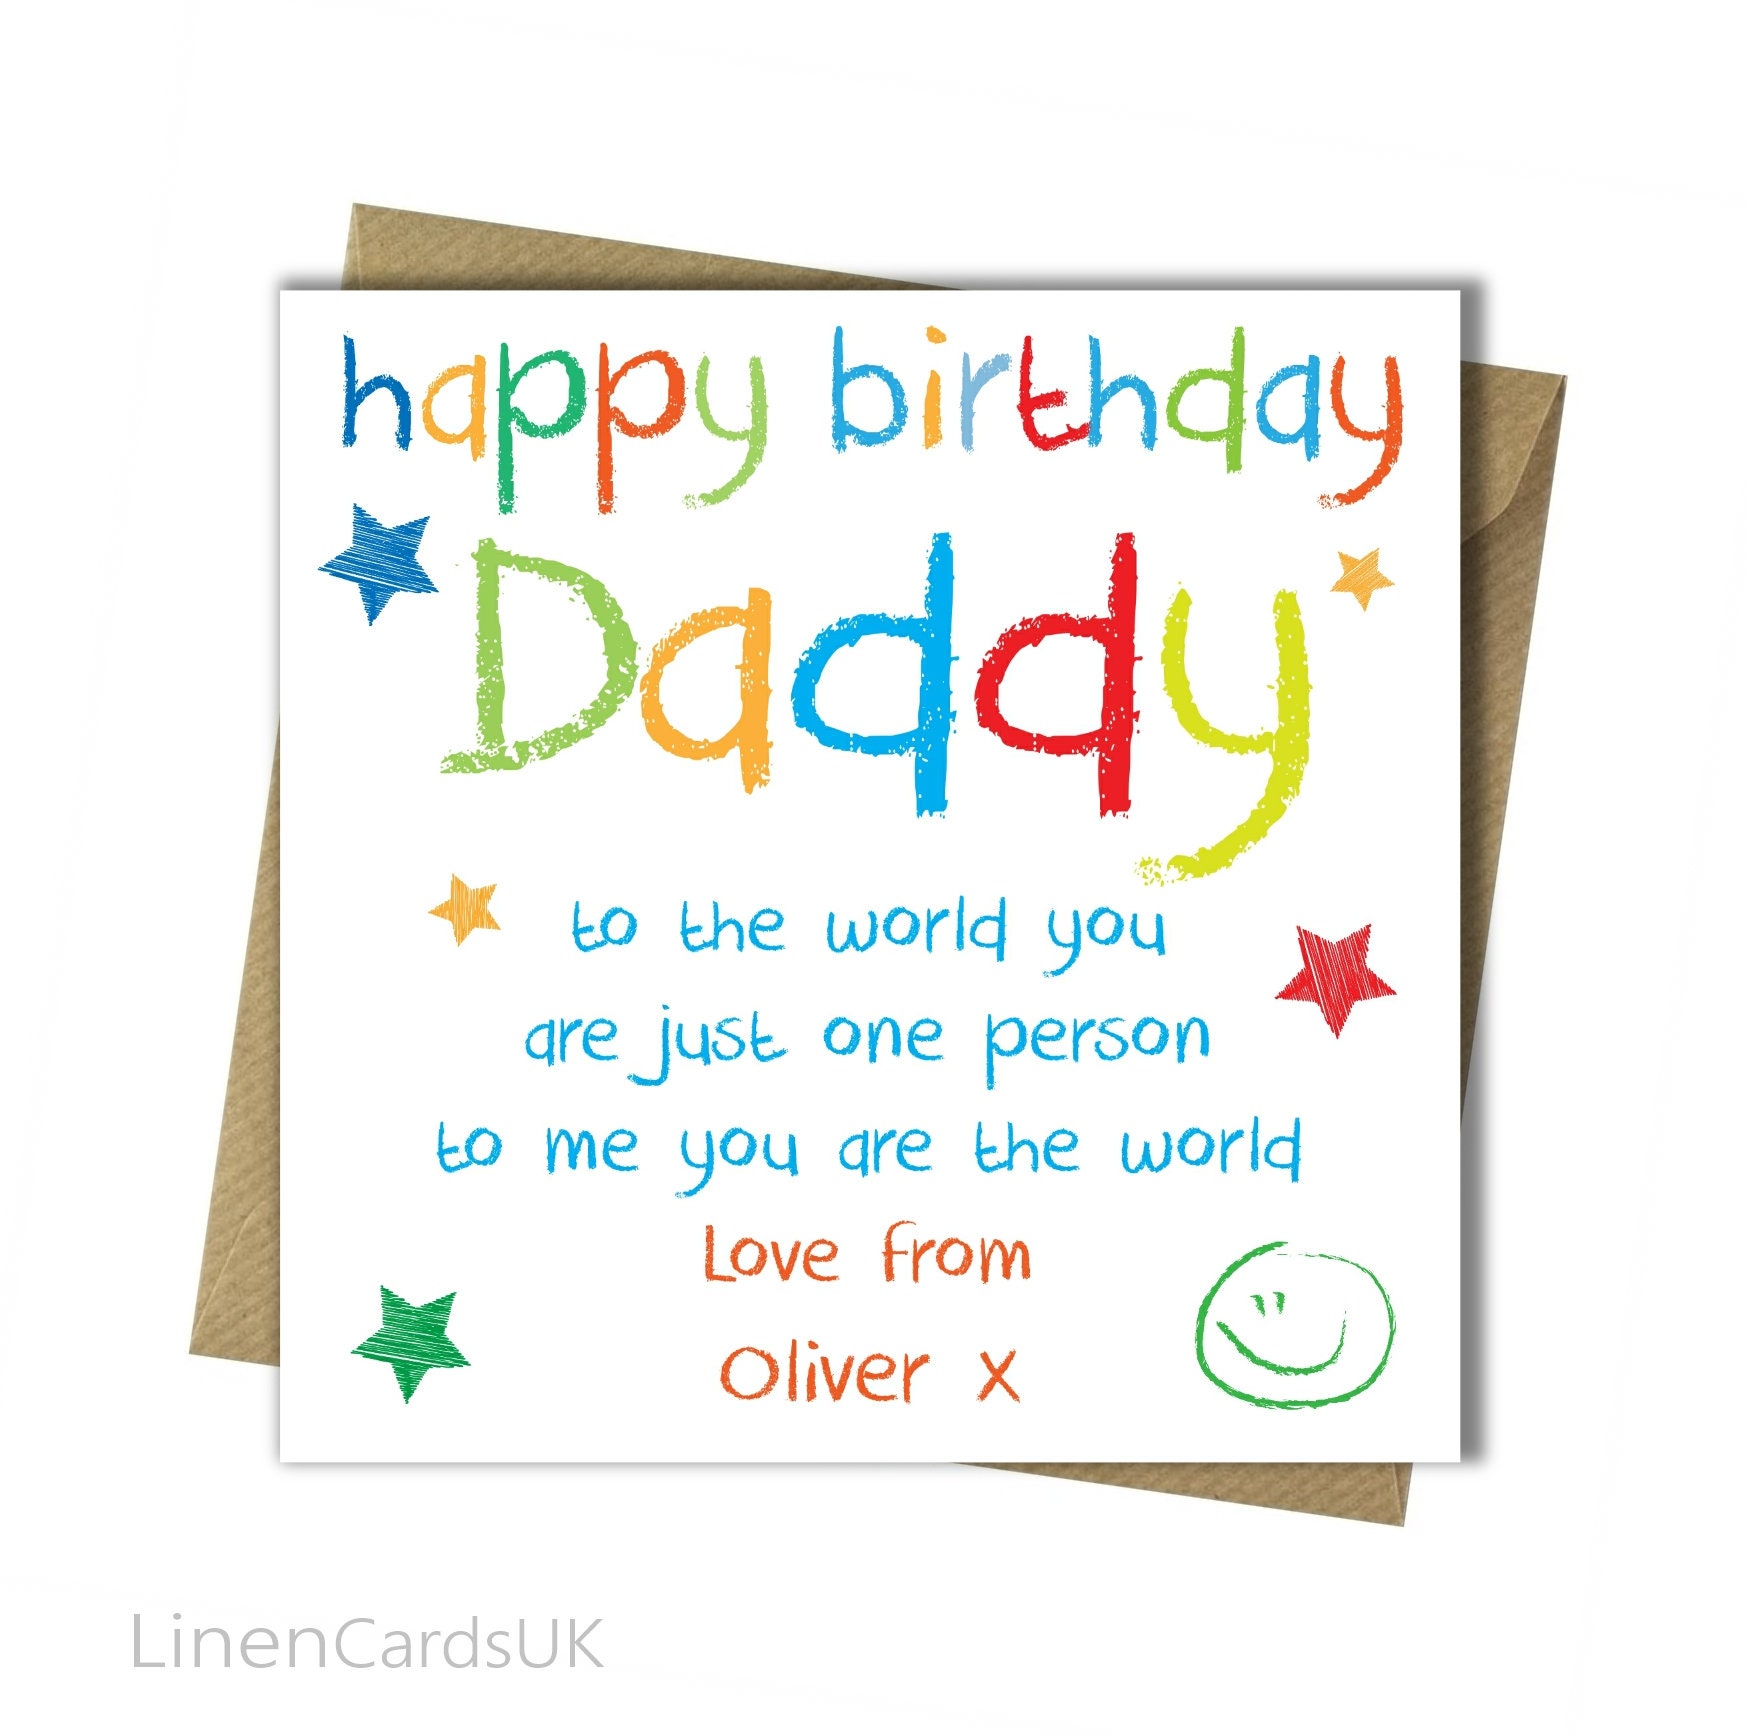 birthday-card-for-my-dad-birthday-ideas-pinterest-dads-my-dad